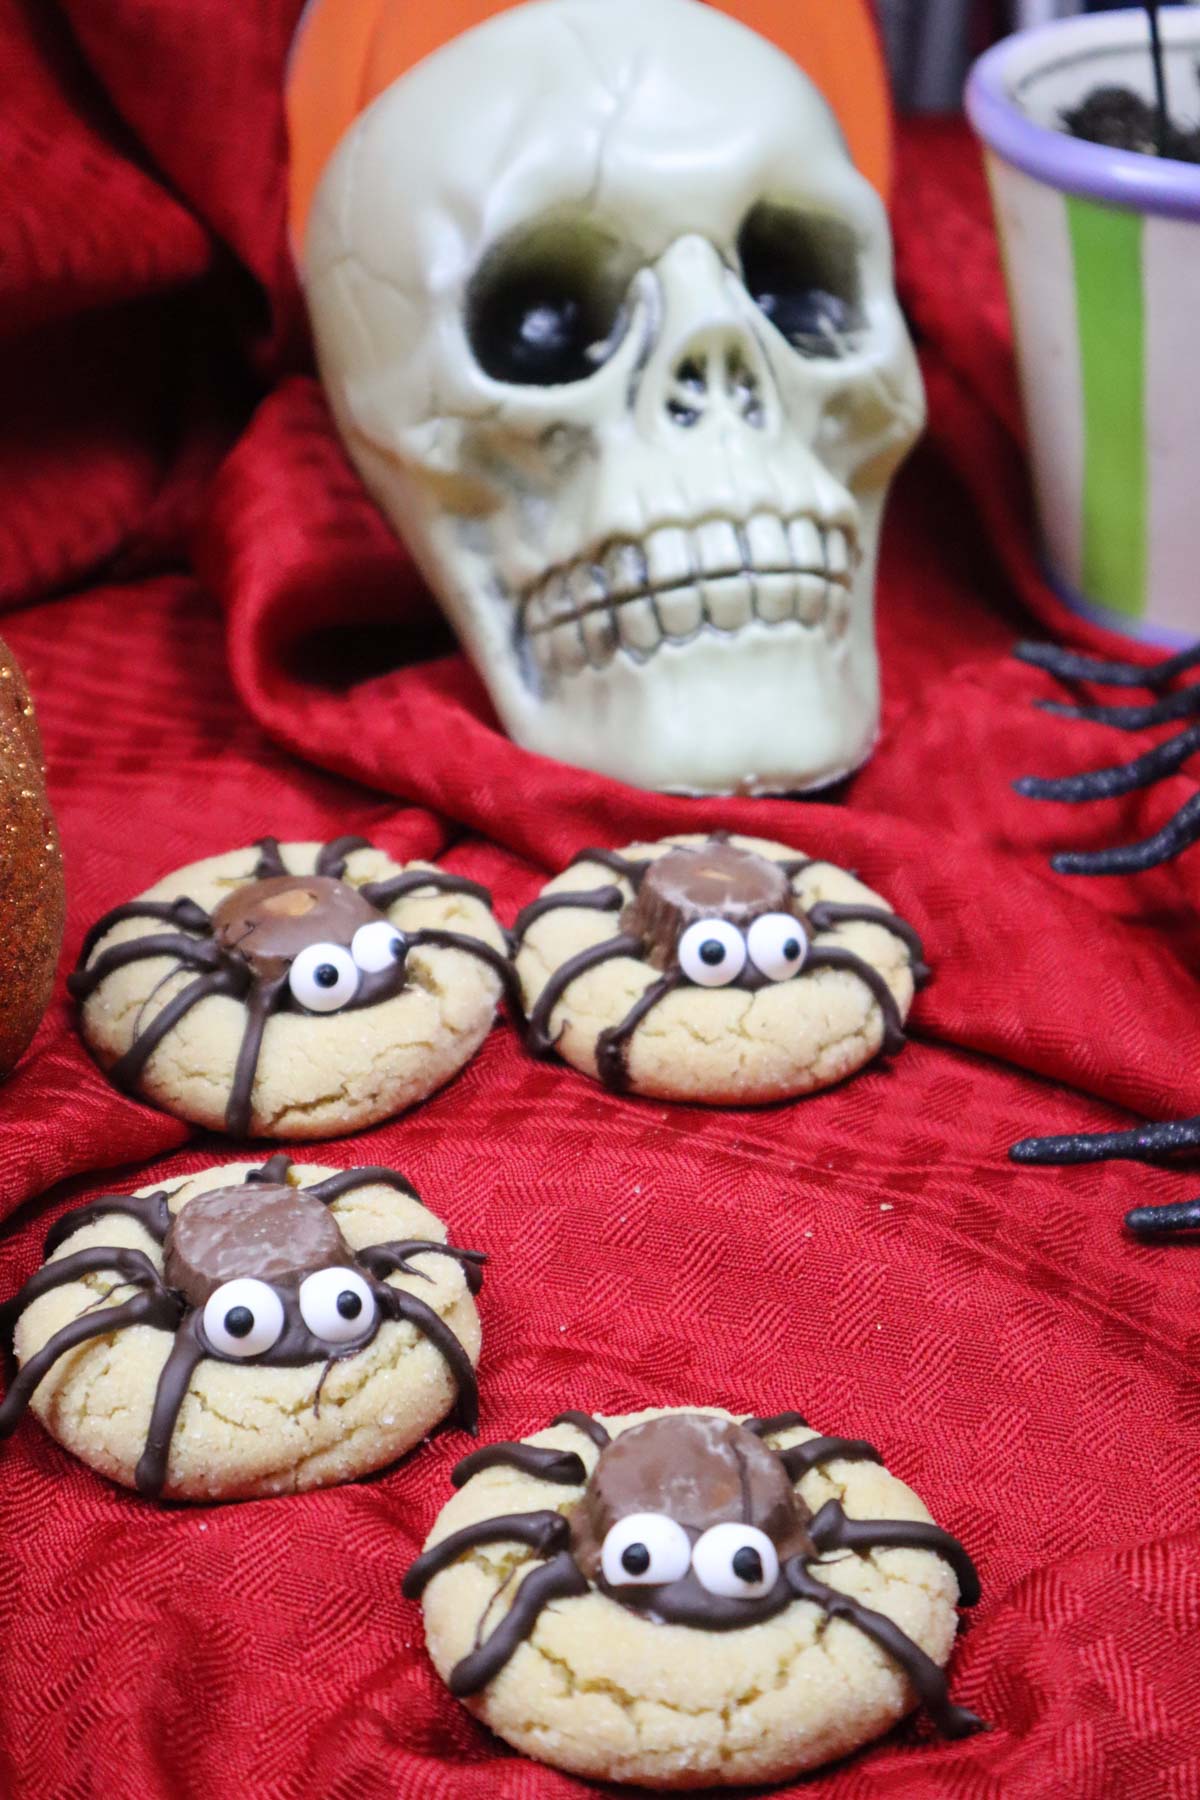 Ragni di Halloween, foto di presentazione con tanti biscotti a forma di ragno su una tovaglia rossa e uno scheletro decorativo di halloween sullo sfondo.